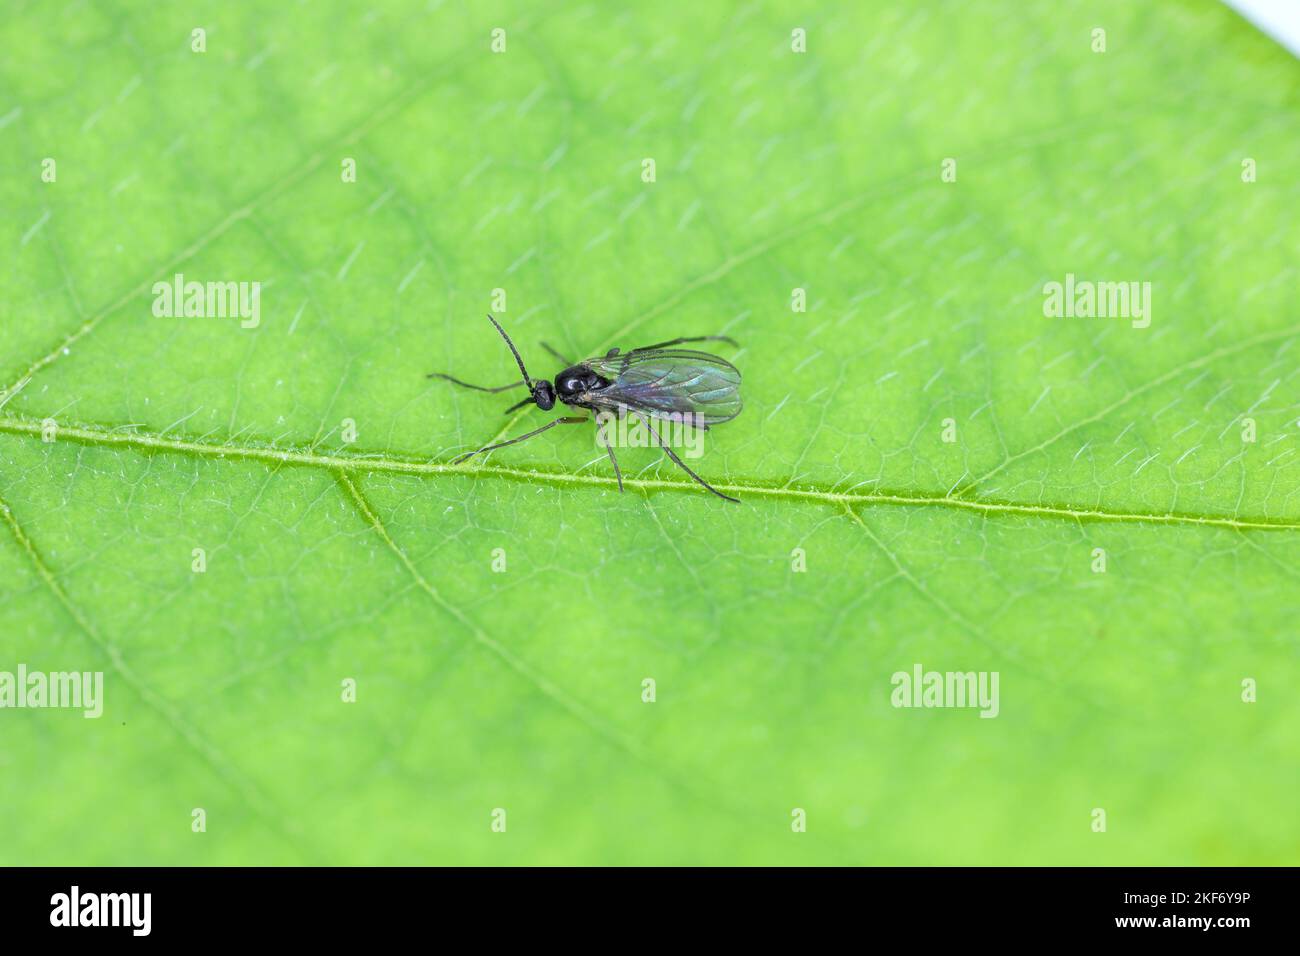 Gnat fungo dalle ali scure, Sciaridae su una foglia verde, questi insetti si trovano spesso all'interno delle case. Foto Stock